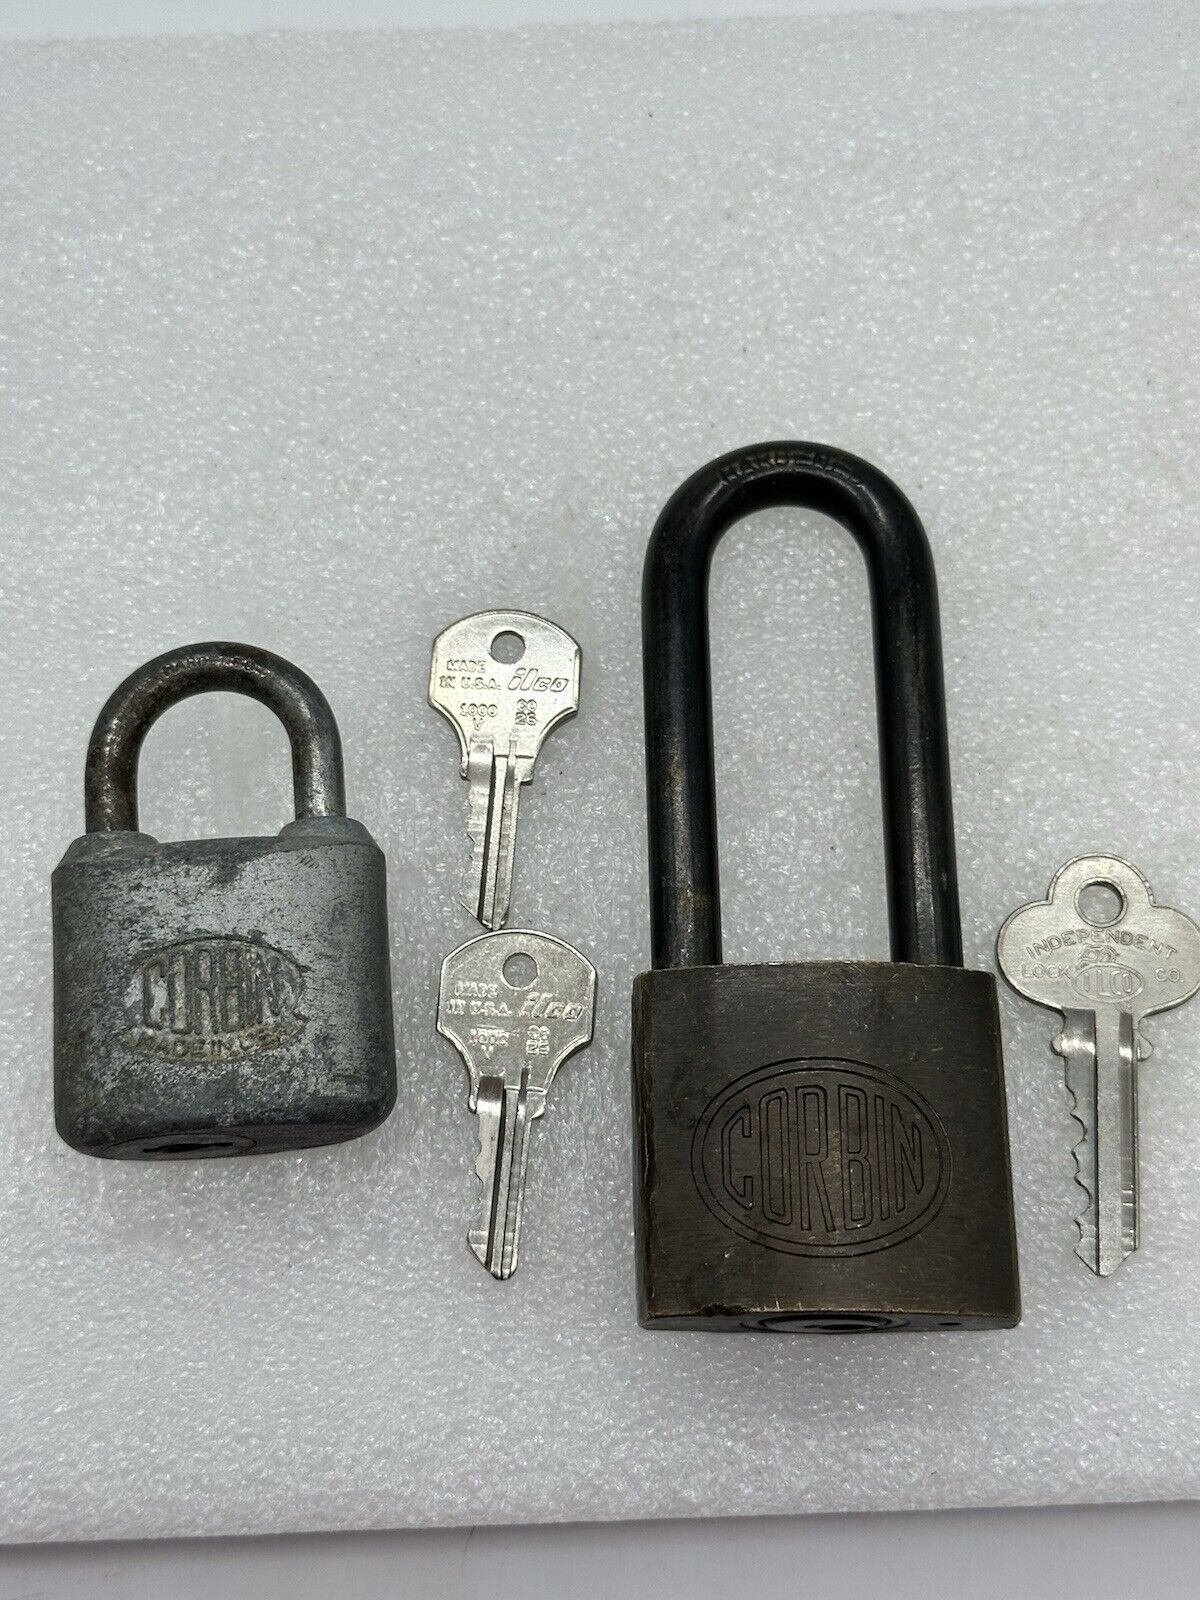 Set Of 2 Vintage Corbin Padlocks With keys